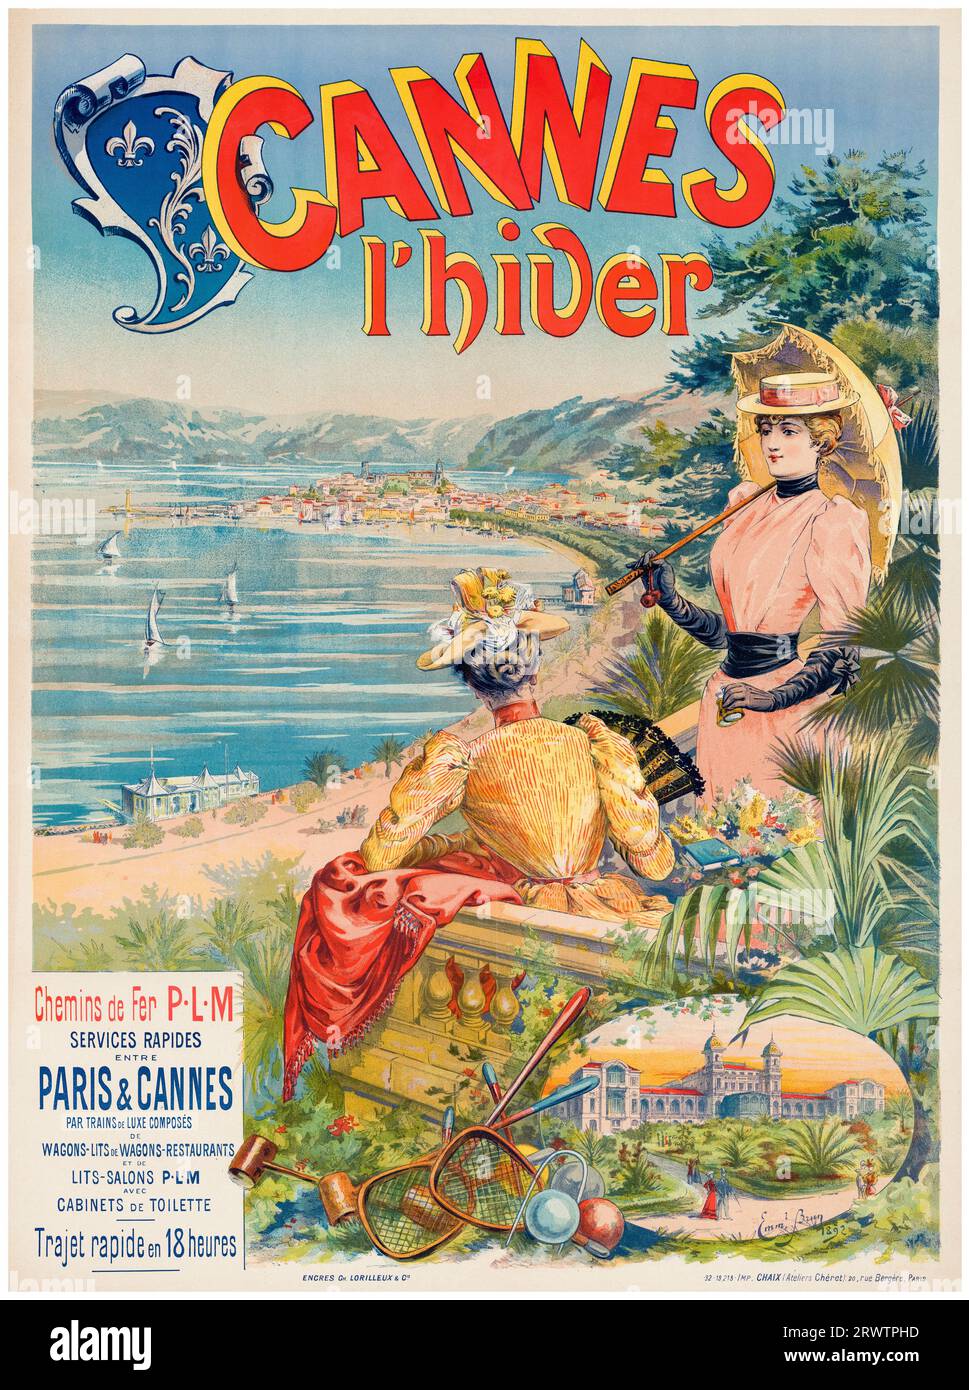 Affiche de voyage vintage française des années 1890, Winter in Cannes, chemins de fer PLM (PLM Railways), 1892 Banque D'Images